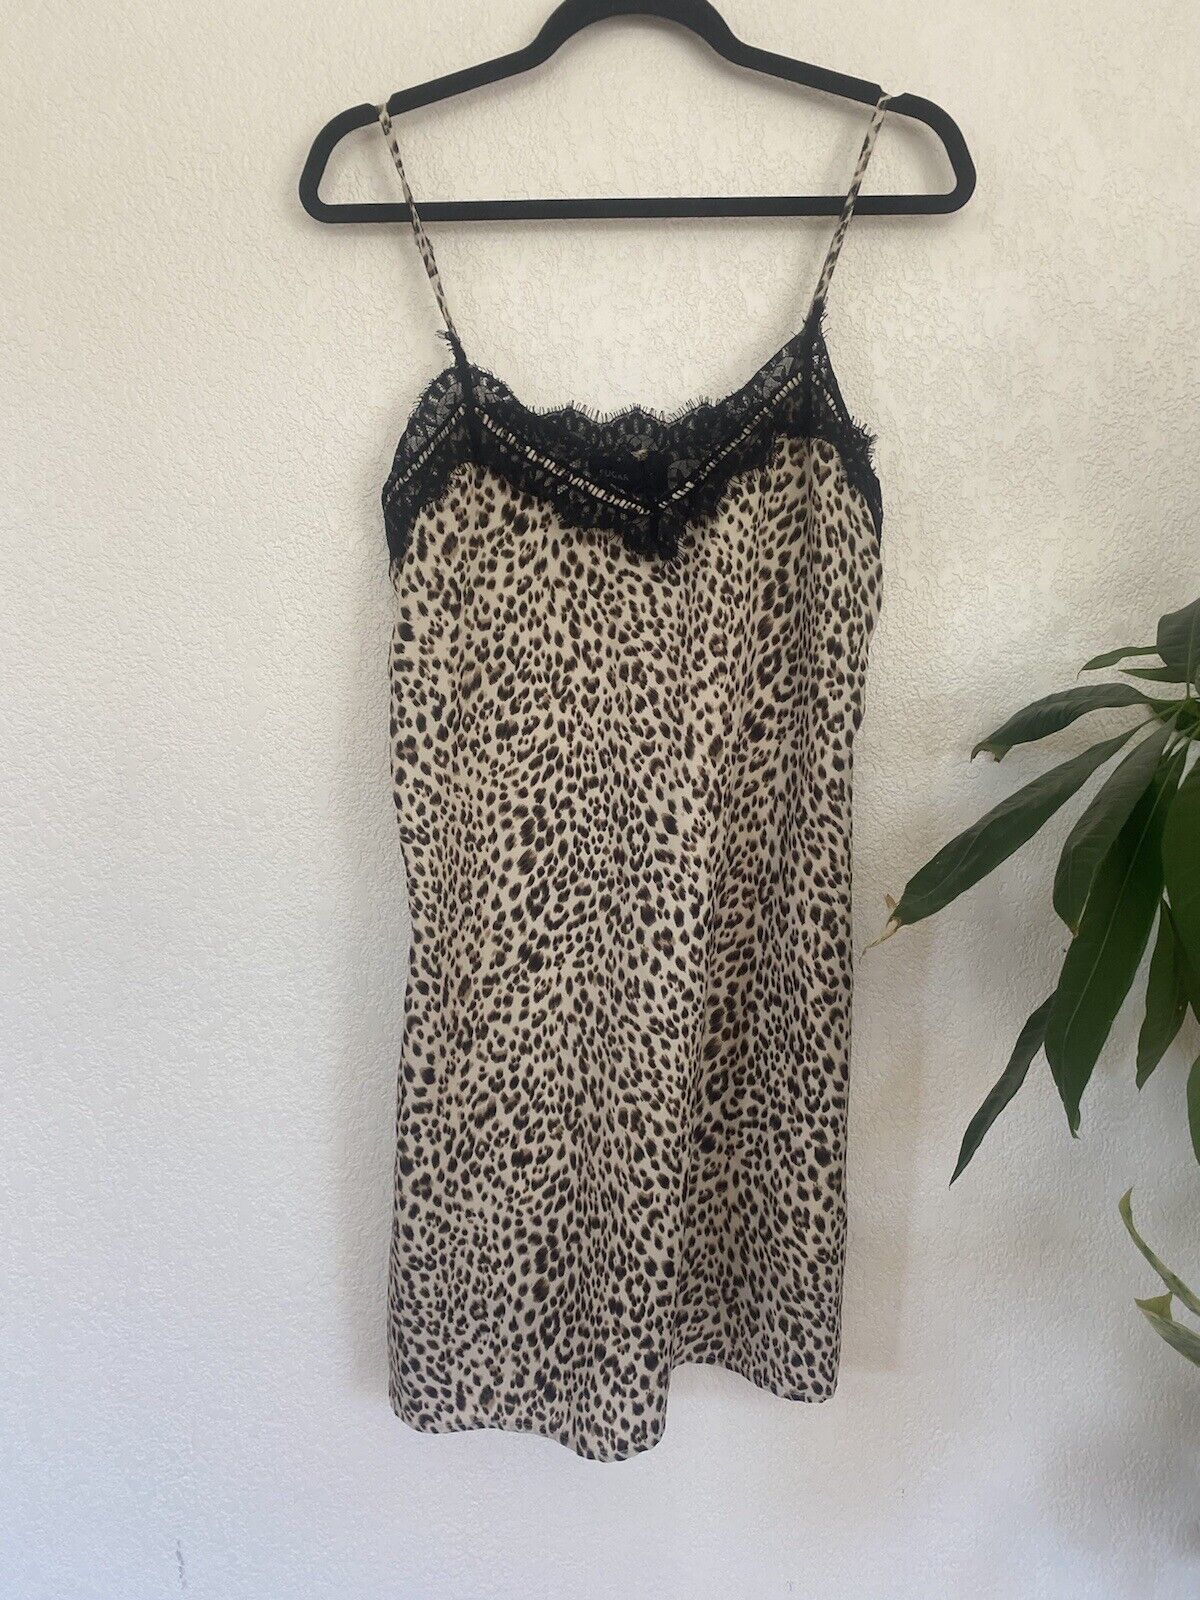 Leopard Print Slip Dress - Sugar Lips - Women’s Medium # 2706